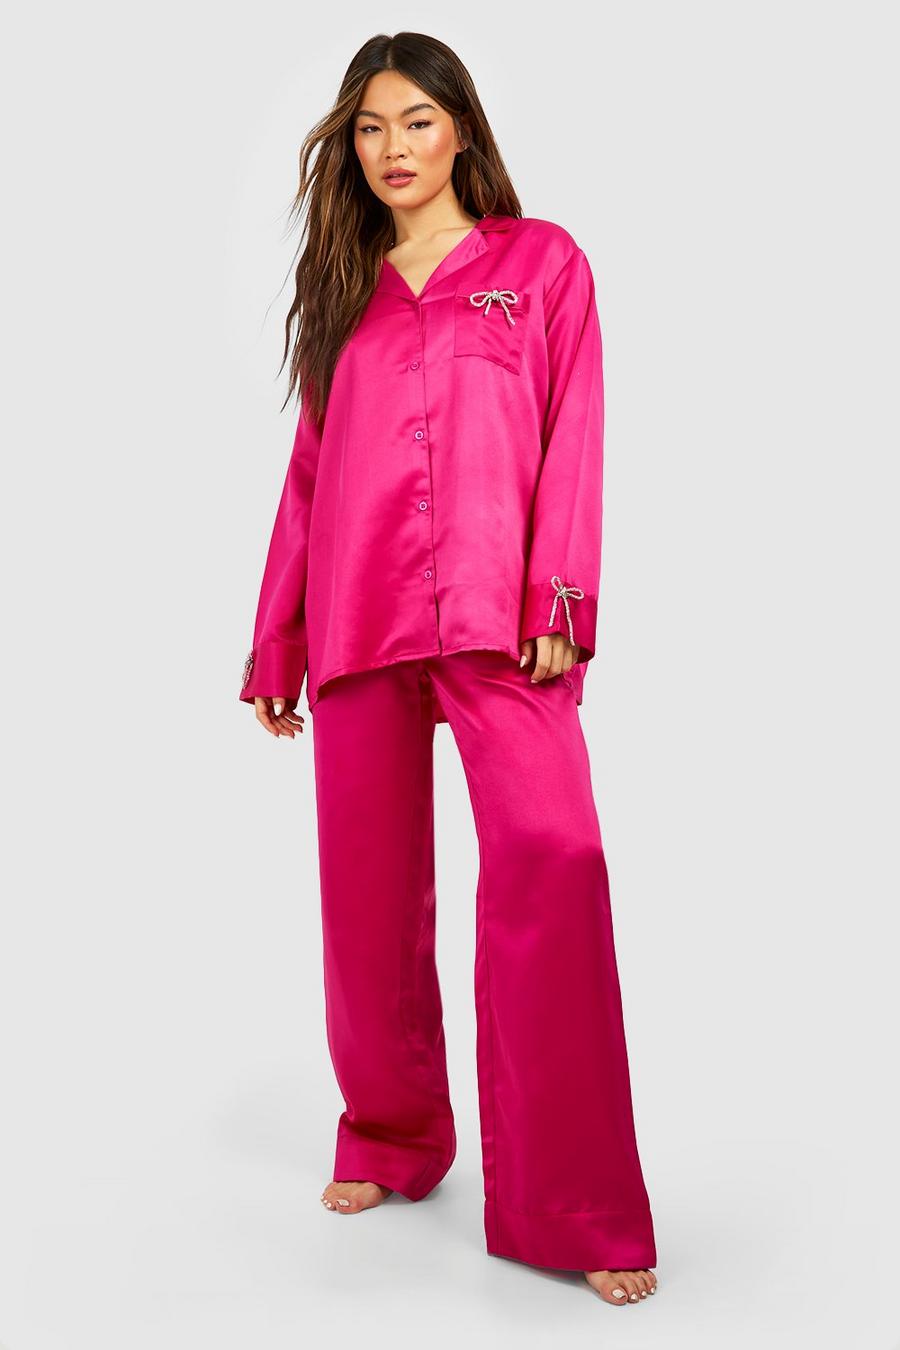 Ensemble premium avec chemise à nœud strassé et pyjama large, Hot pink image number 1